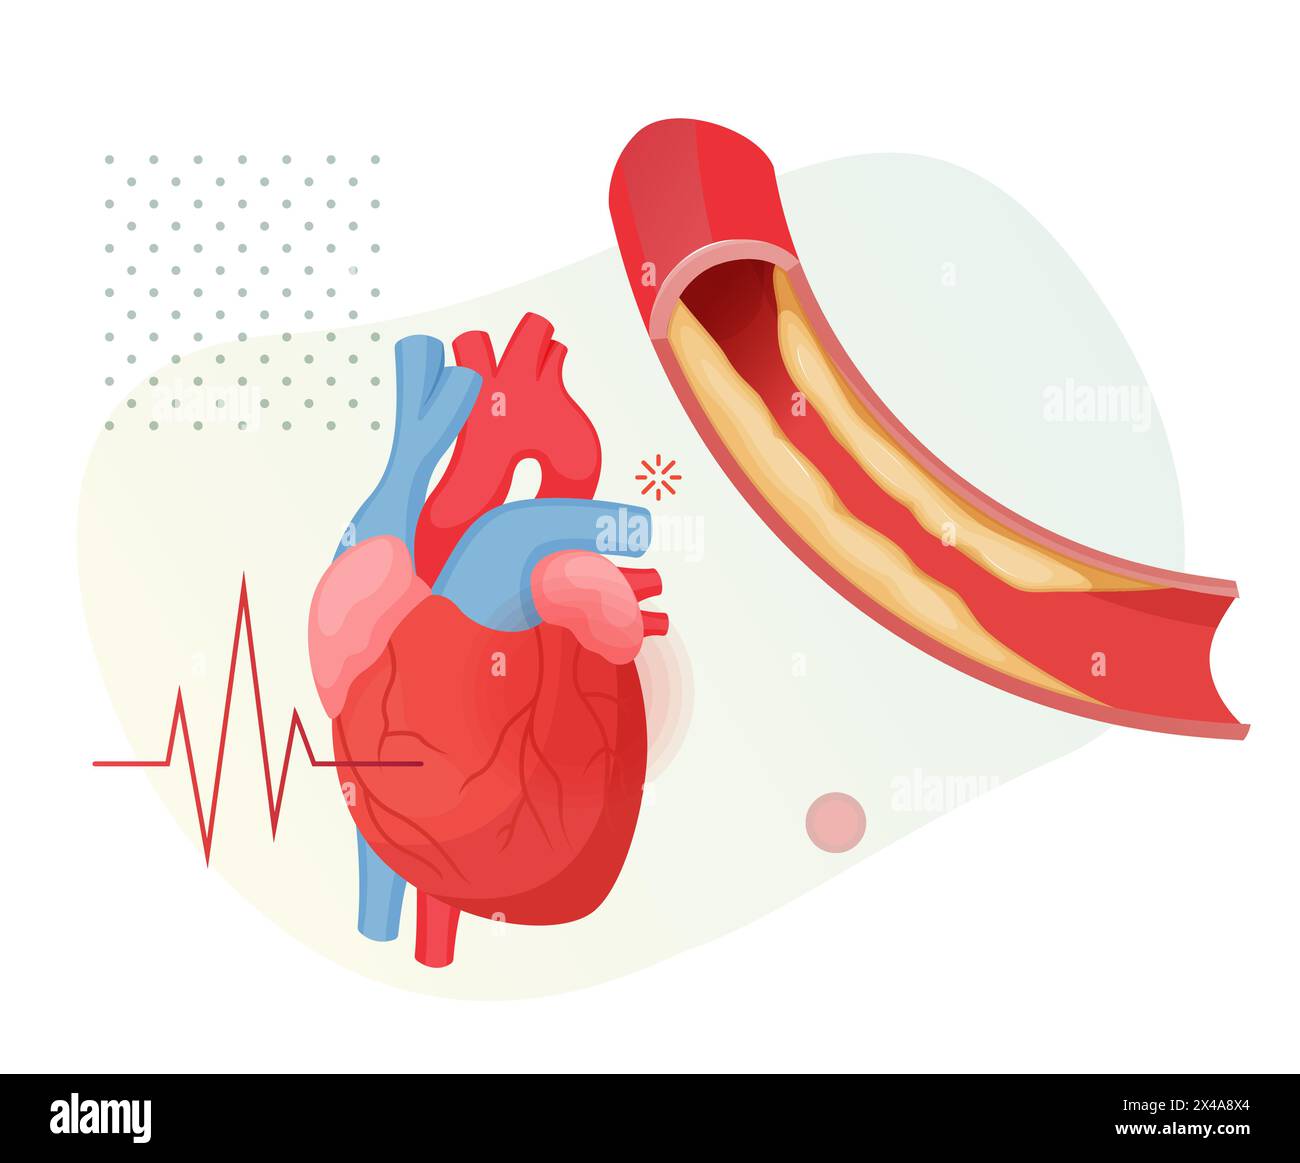 Stades d'athérosclérose - accumulation de plaque de cholestérol dans le cœur - illustration stock en tant que fichier EPS 10 Illustration de Vecteur